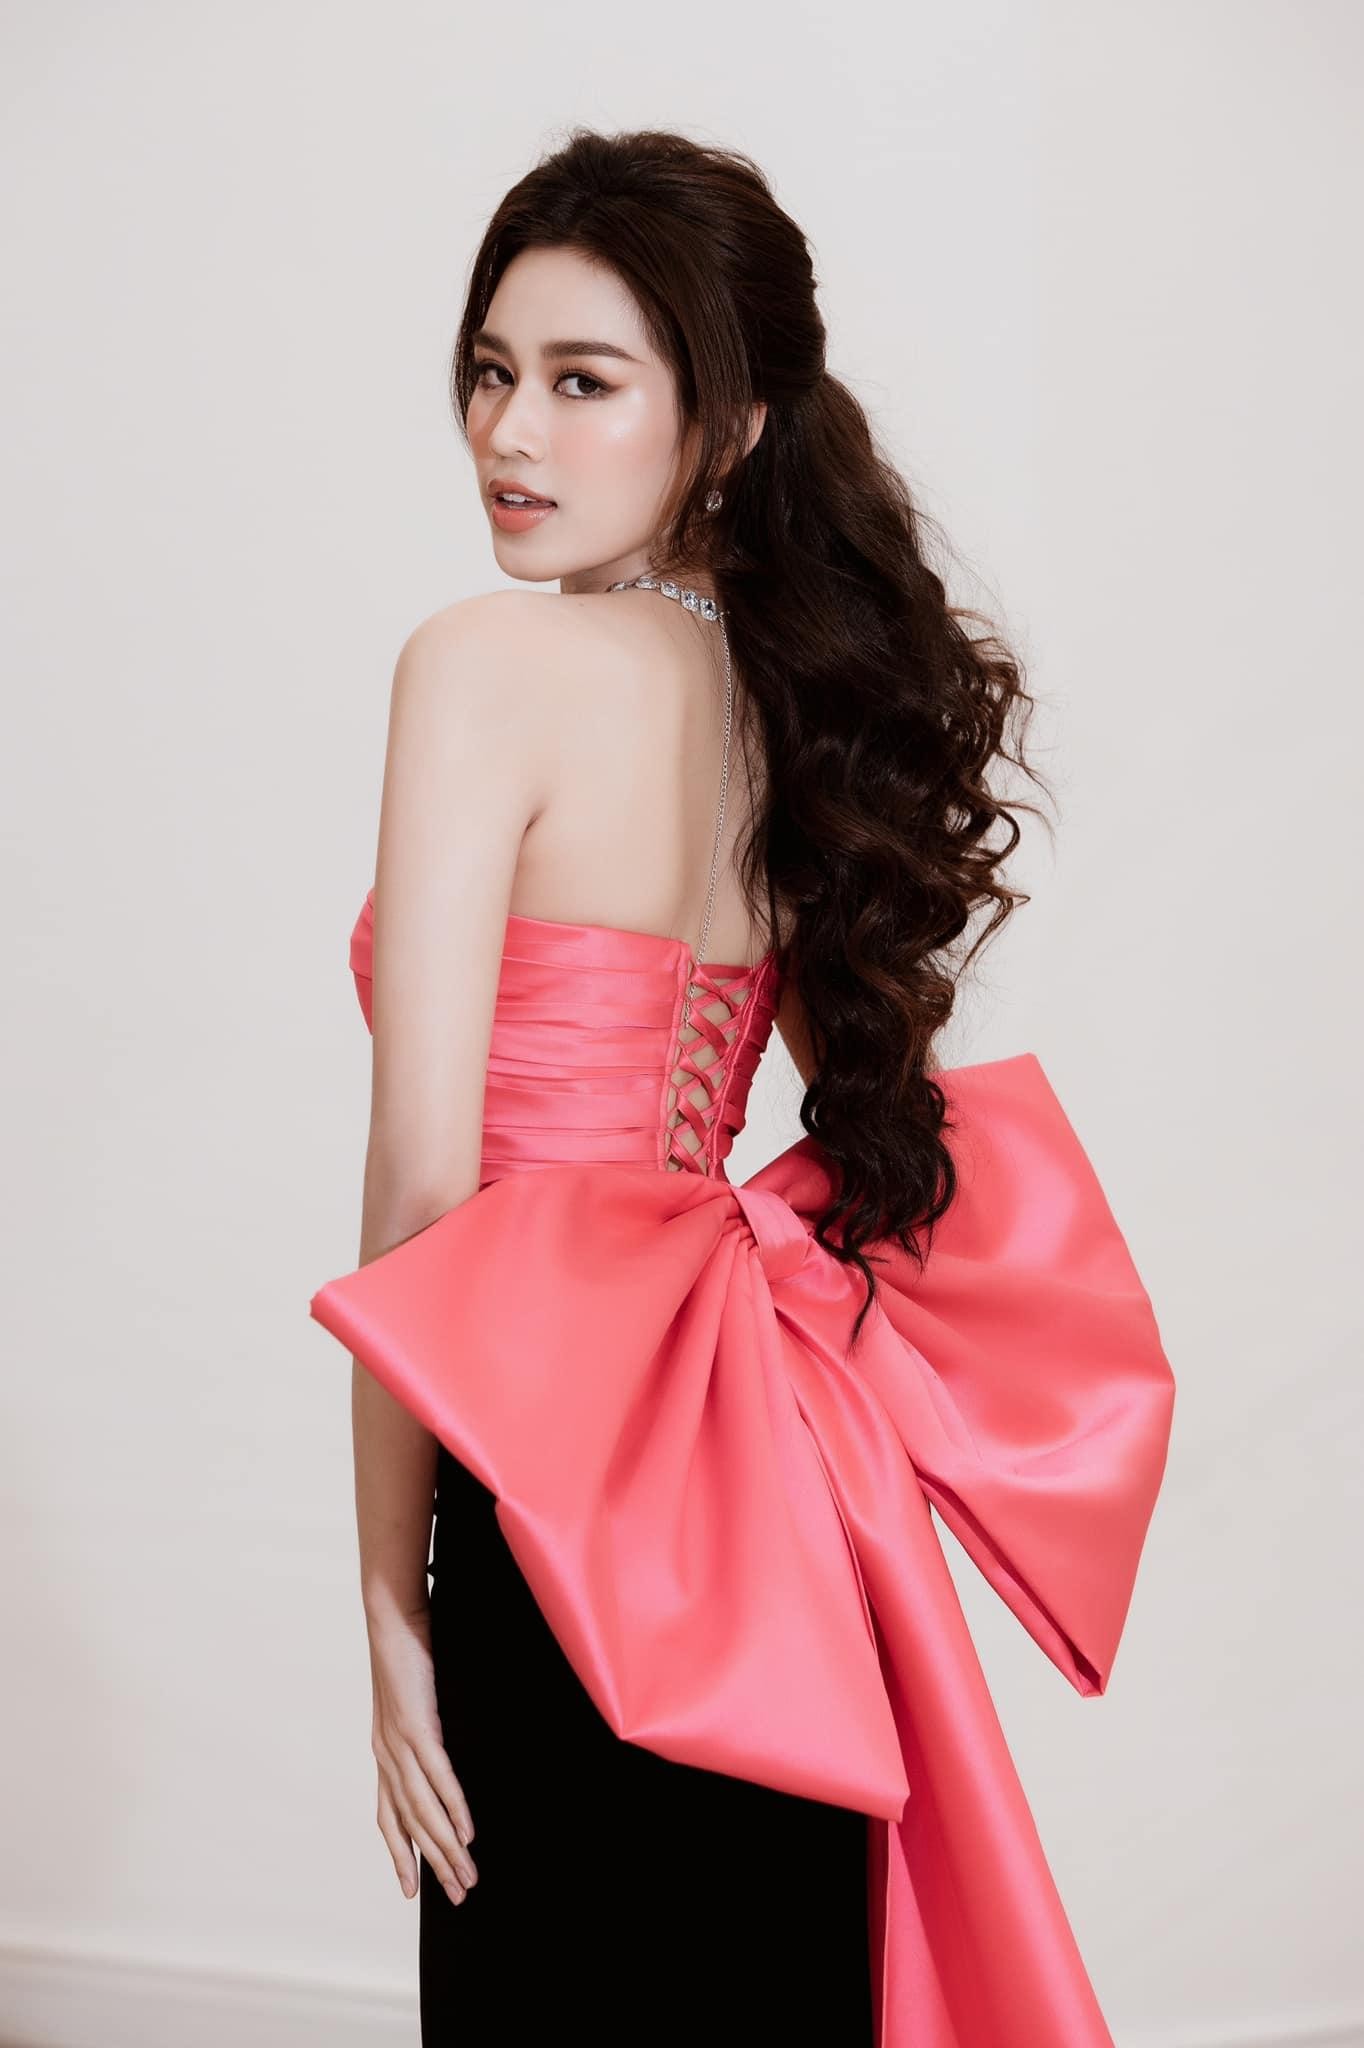 Hoa hậu Đỗ Thị Hà ‘biến hóa’ với tóc: Xoăn đuôi nhẹ vẫn là ‘chân ái’ ảnh 10